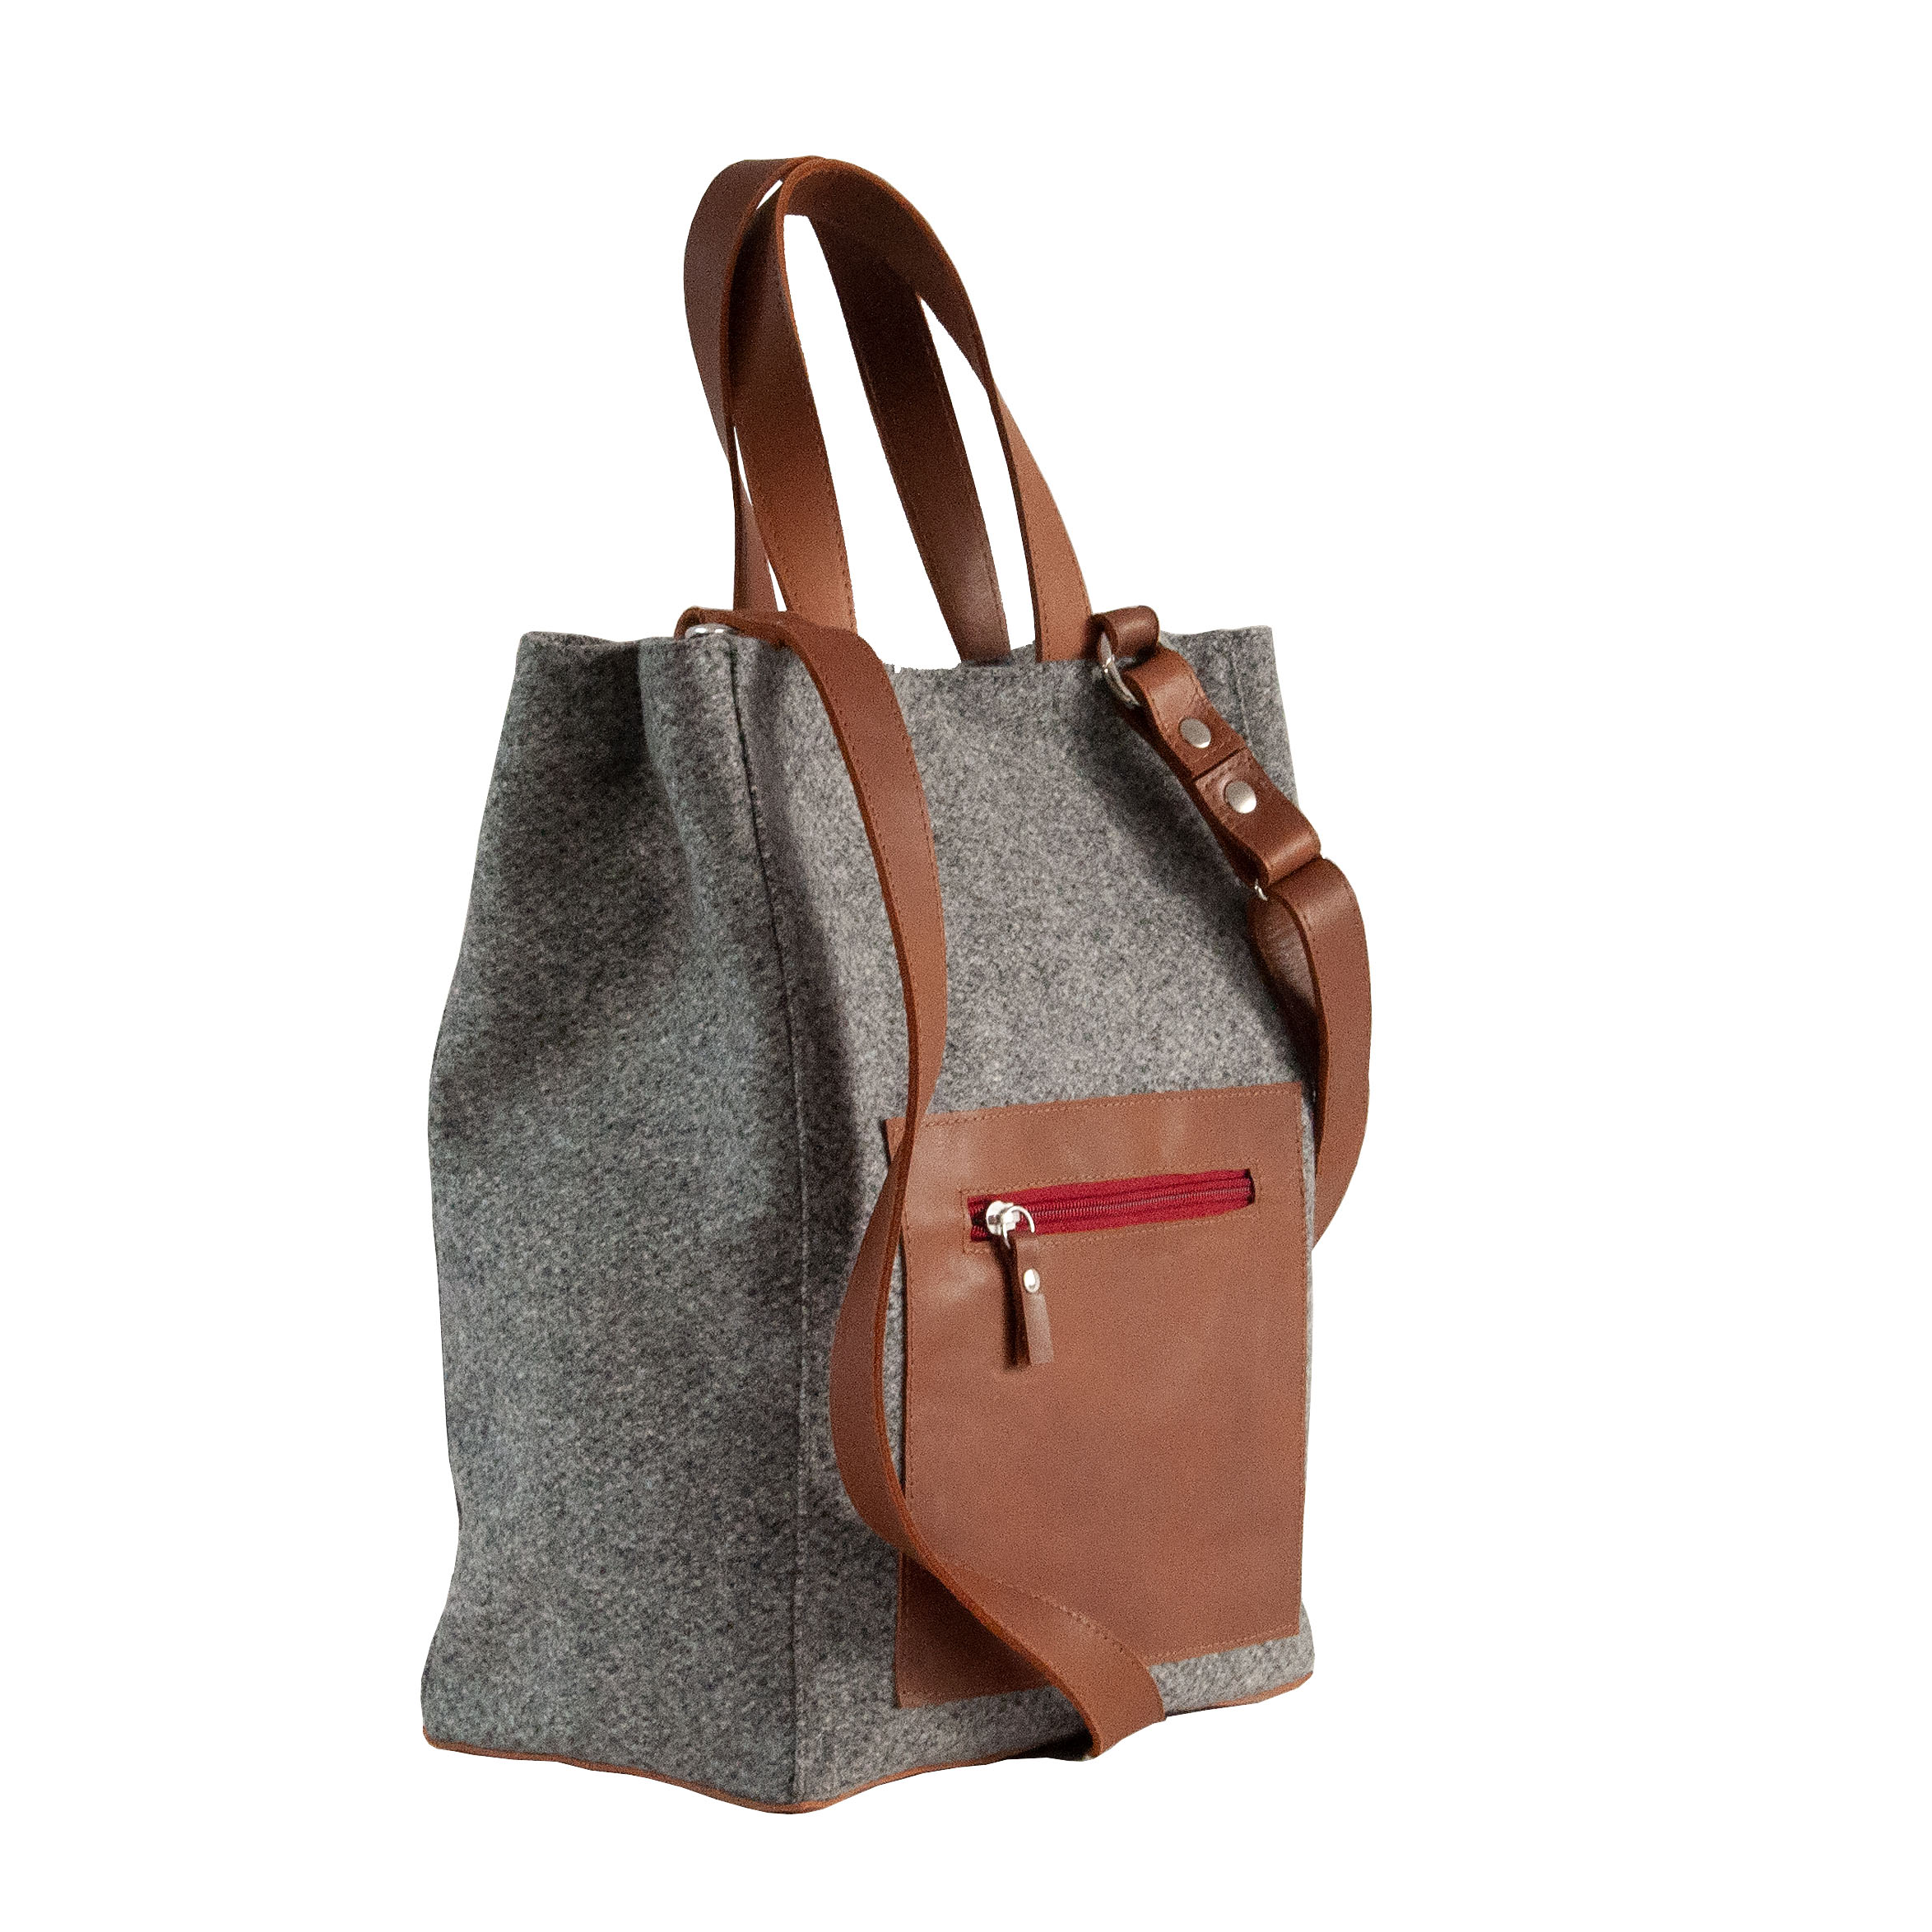 Großer Shopper aus Stoff, Damenhandtasche aus Loden, nachhaltige Handtasche, Made in Austria